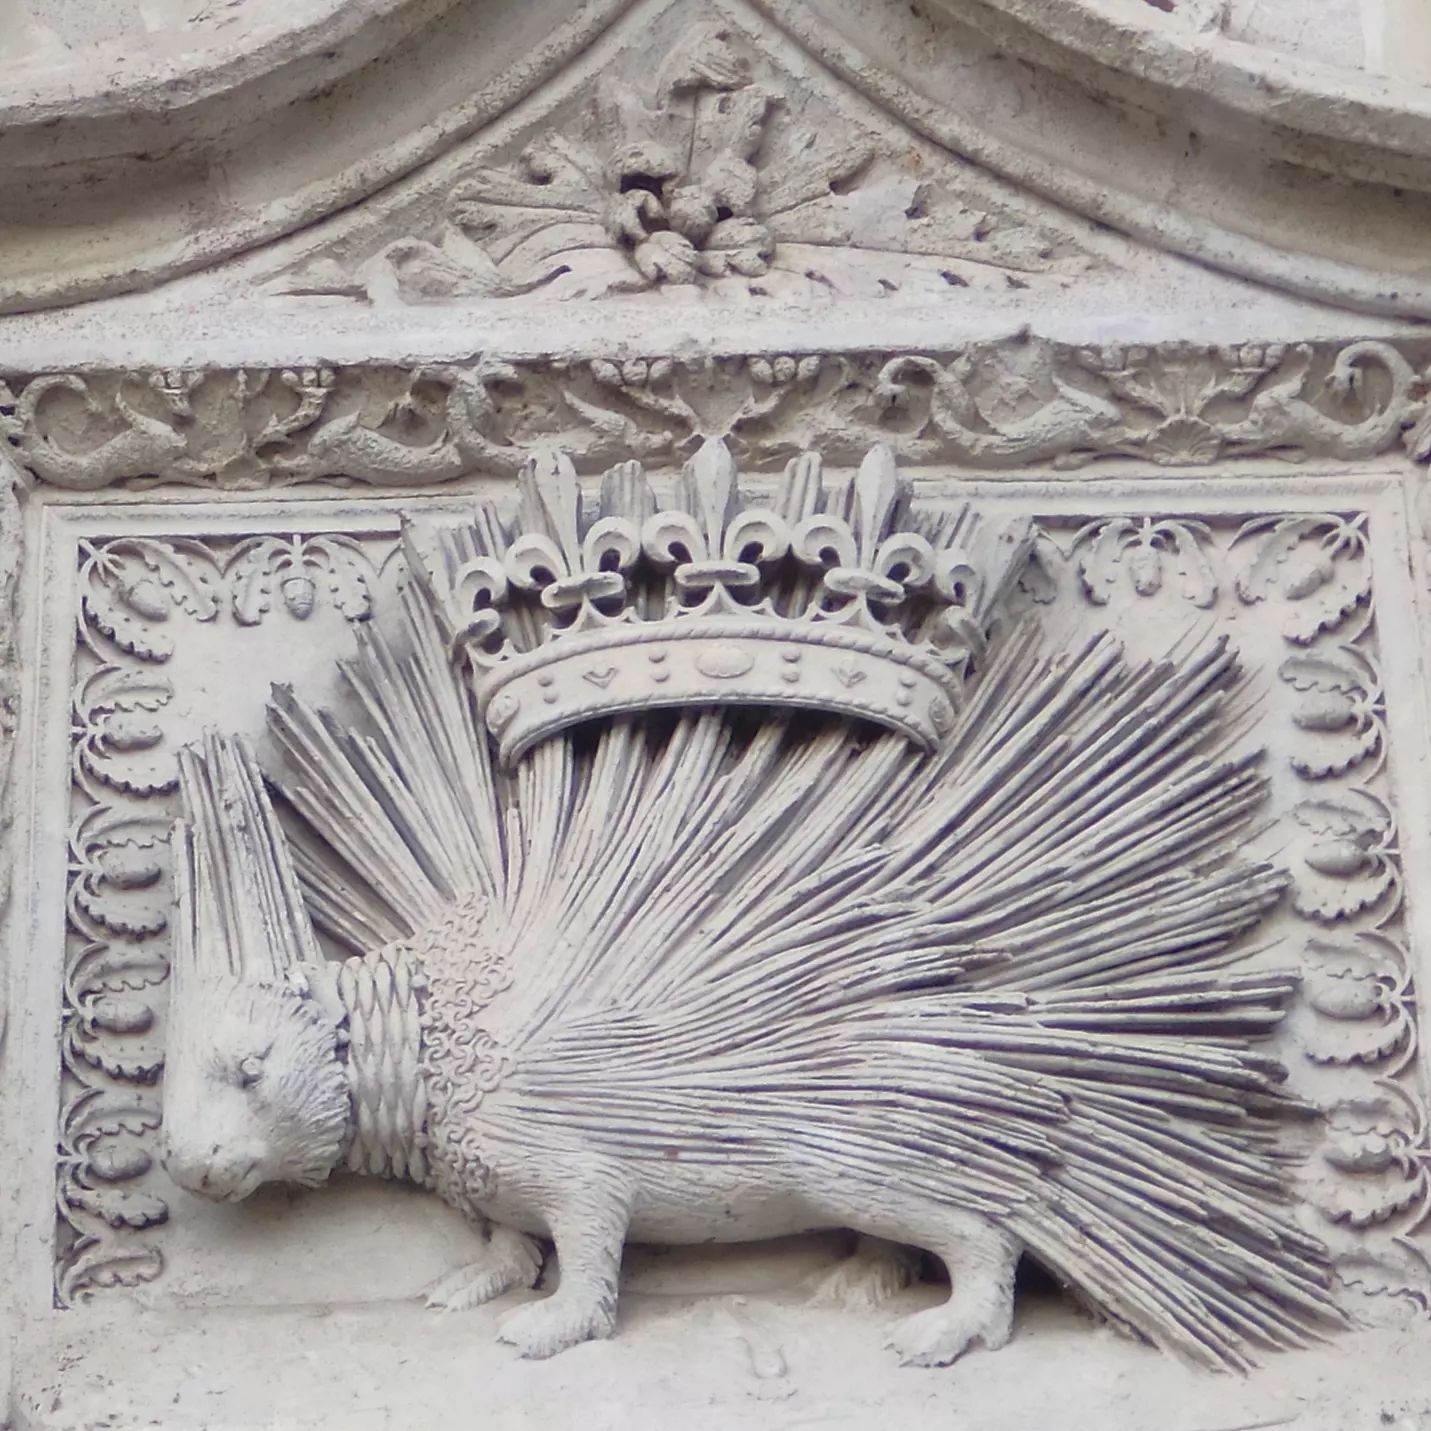 Et voilÃ  la rÃ©ponse : il s'agit de Blois dont les emblÃ¨mes de la ville sont le loup et le porc-Ã©pic. 
Mais je suis d'accord que c'Ã©tait pas Ã©vident de trouver le porc-Ã©pic sur la photo prÃ©cÃ©dente ðŸ˜�